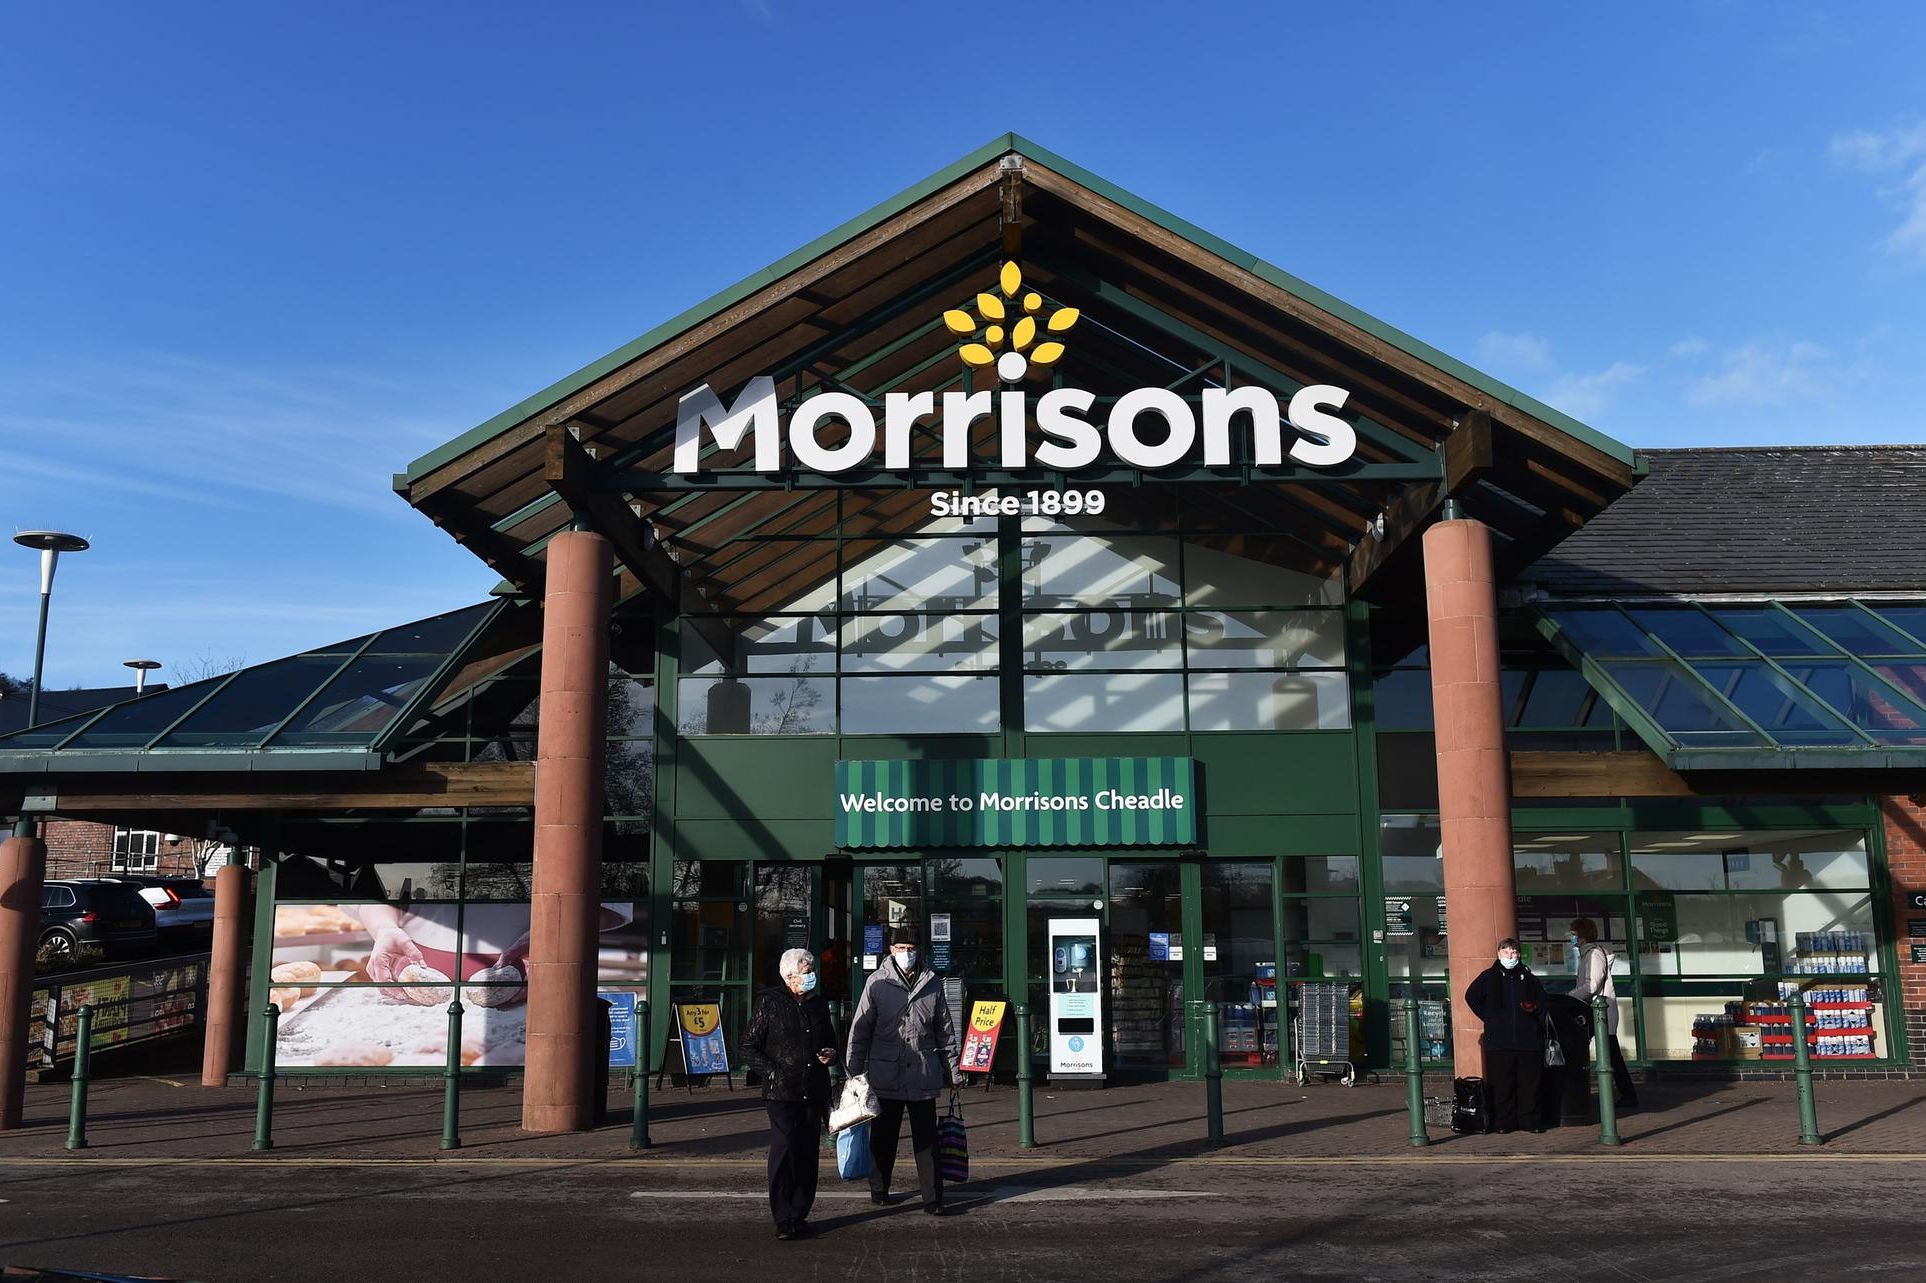 La chaîne de supermarchés Morrisons allègue une fraude contre un homme d’affaires irlandais